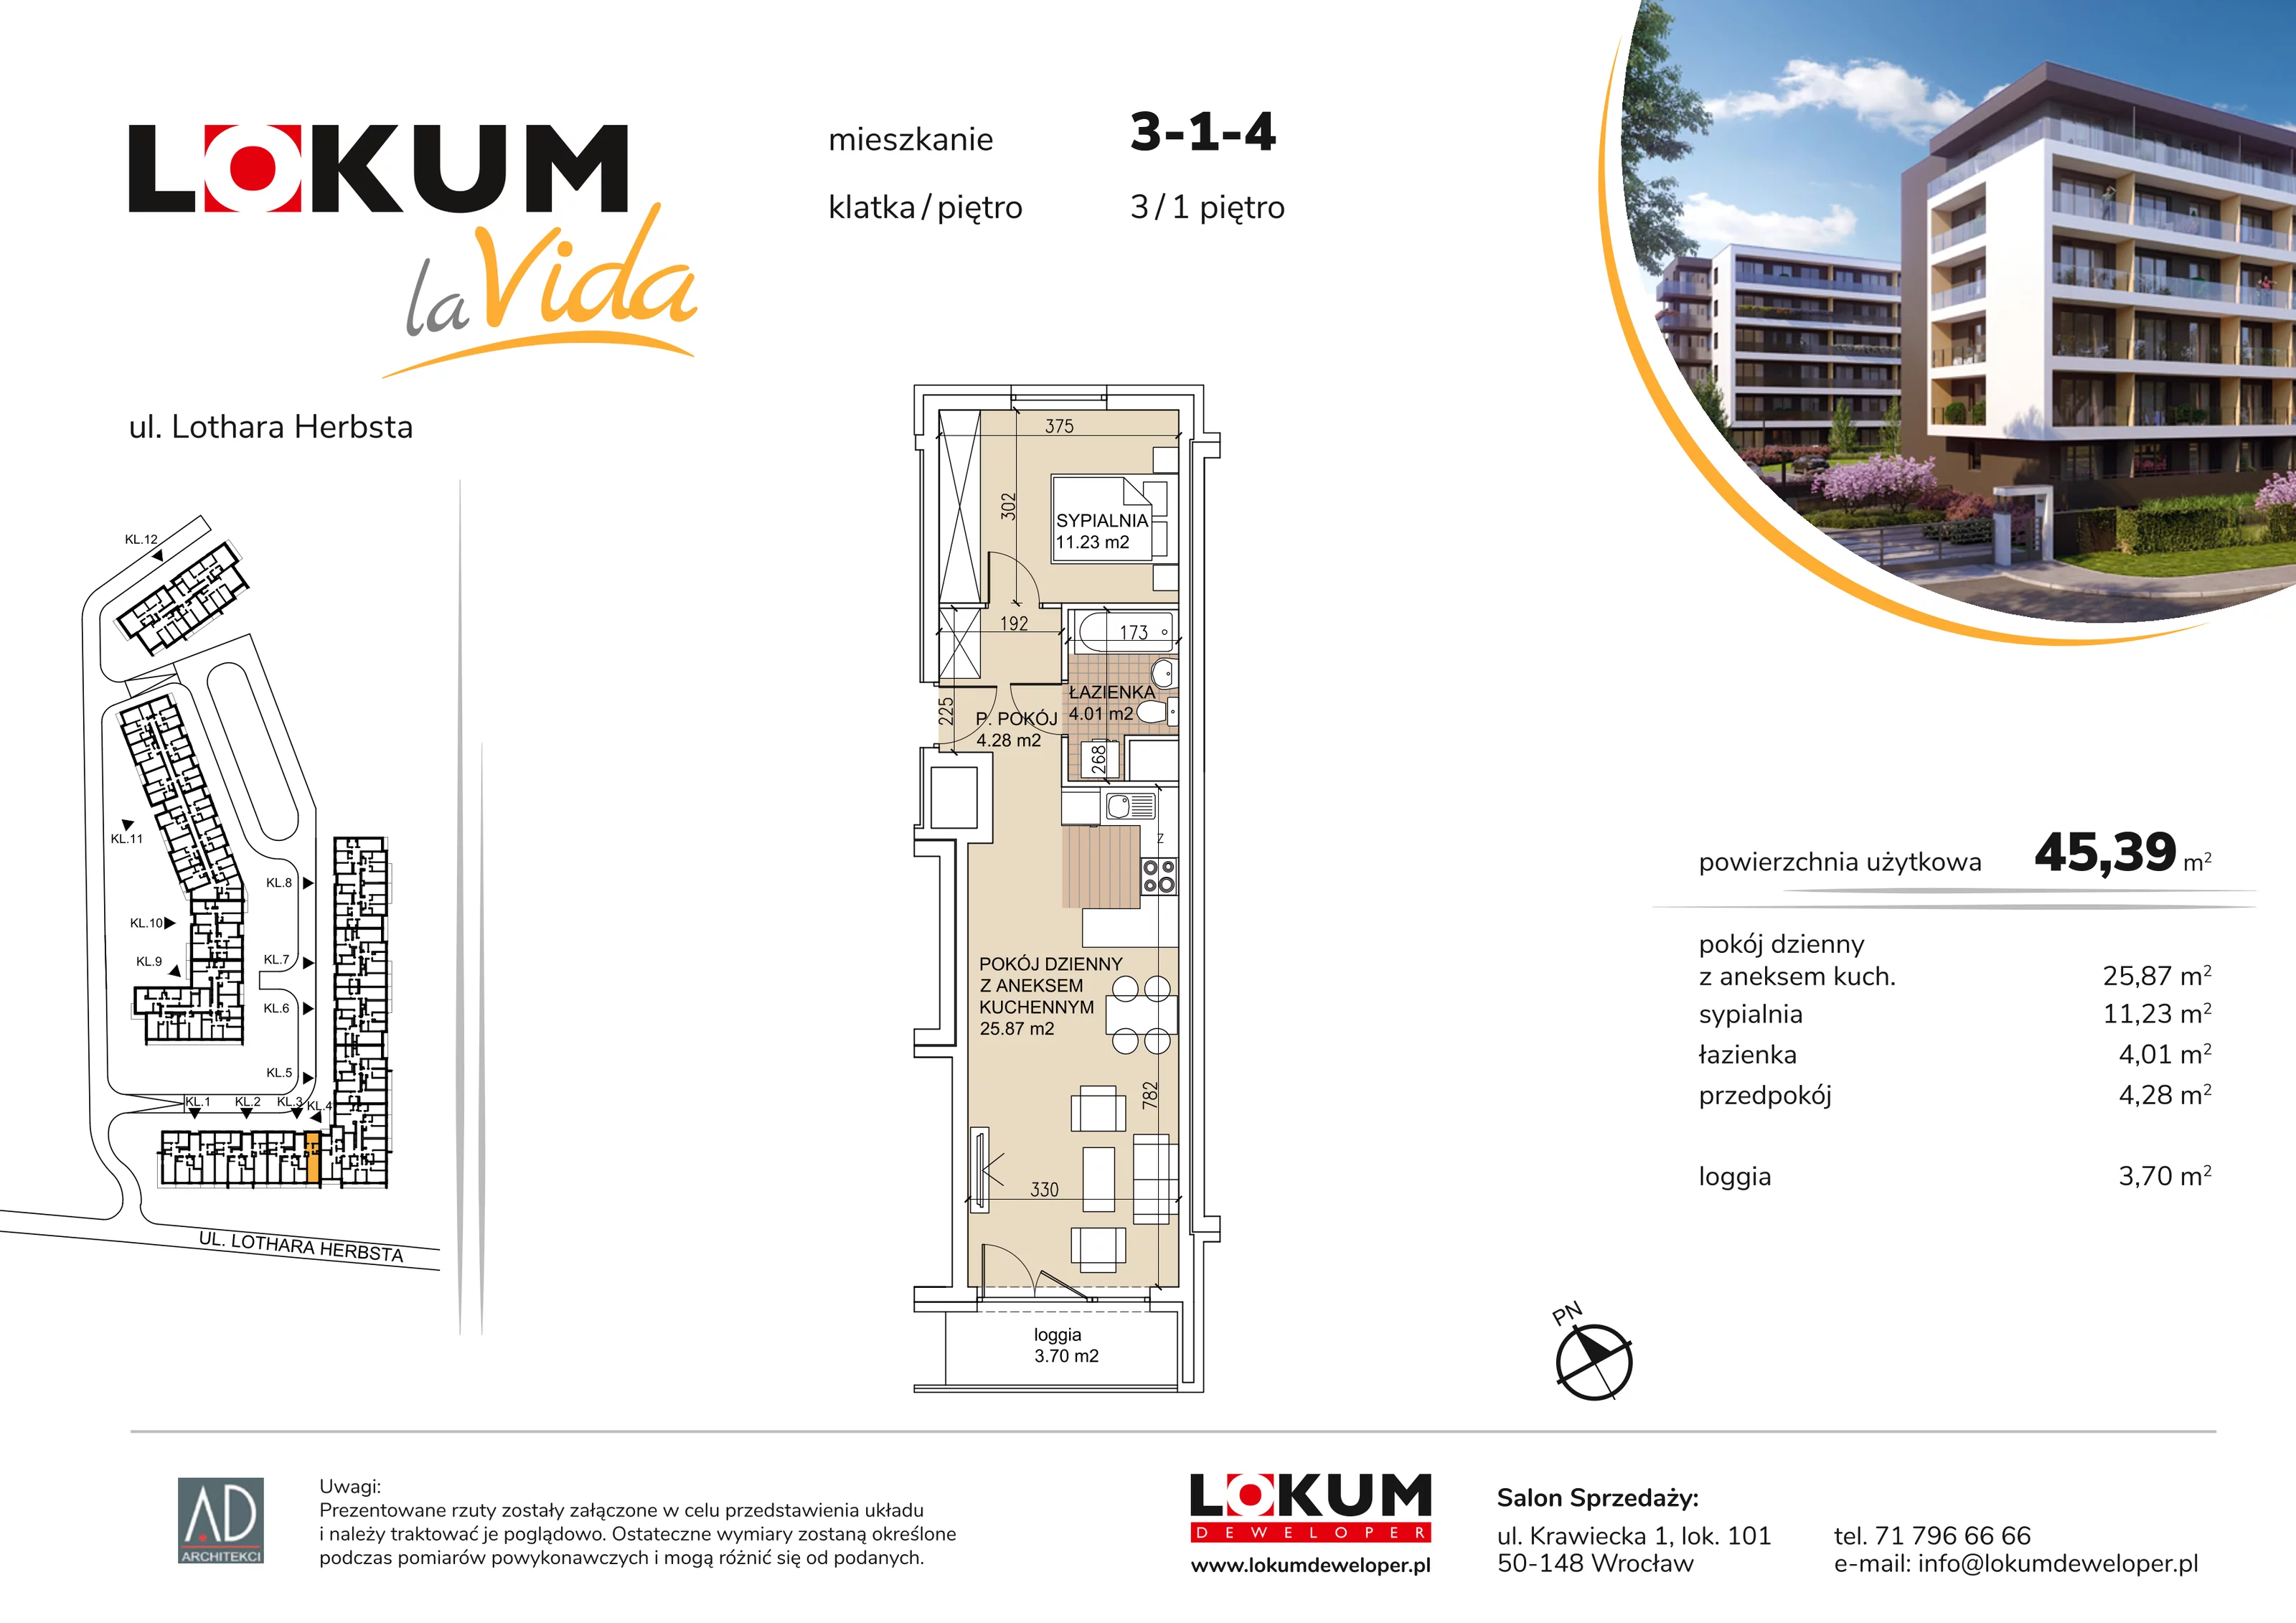 Mieszkanie 45,39 m², piętro 1, oferta nr 3-1-4, Lokum la Vida, Wrocław, Sołtysowice, ul. Lothara Herbsta